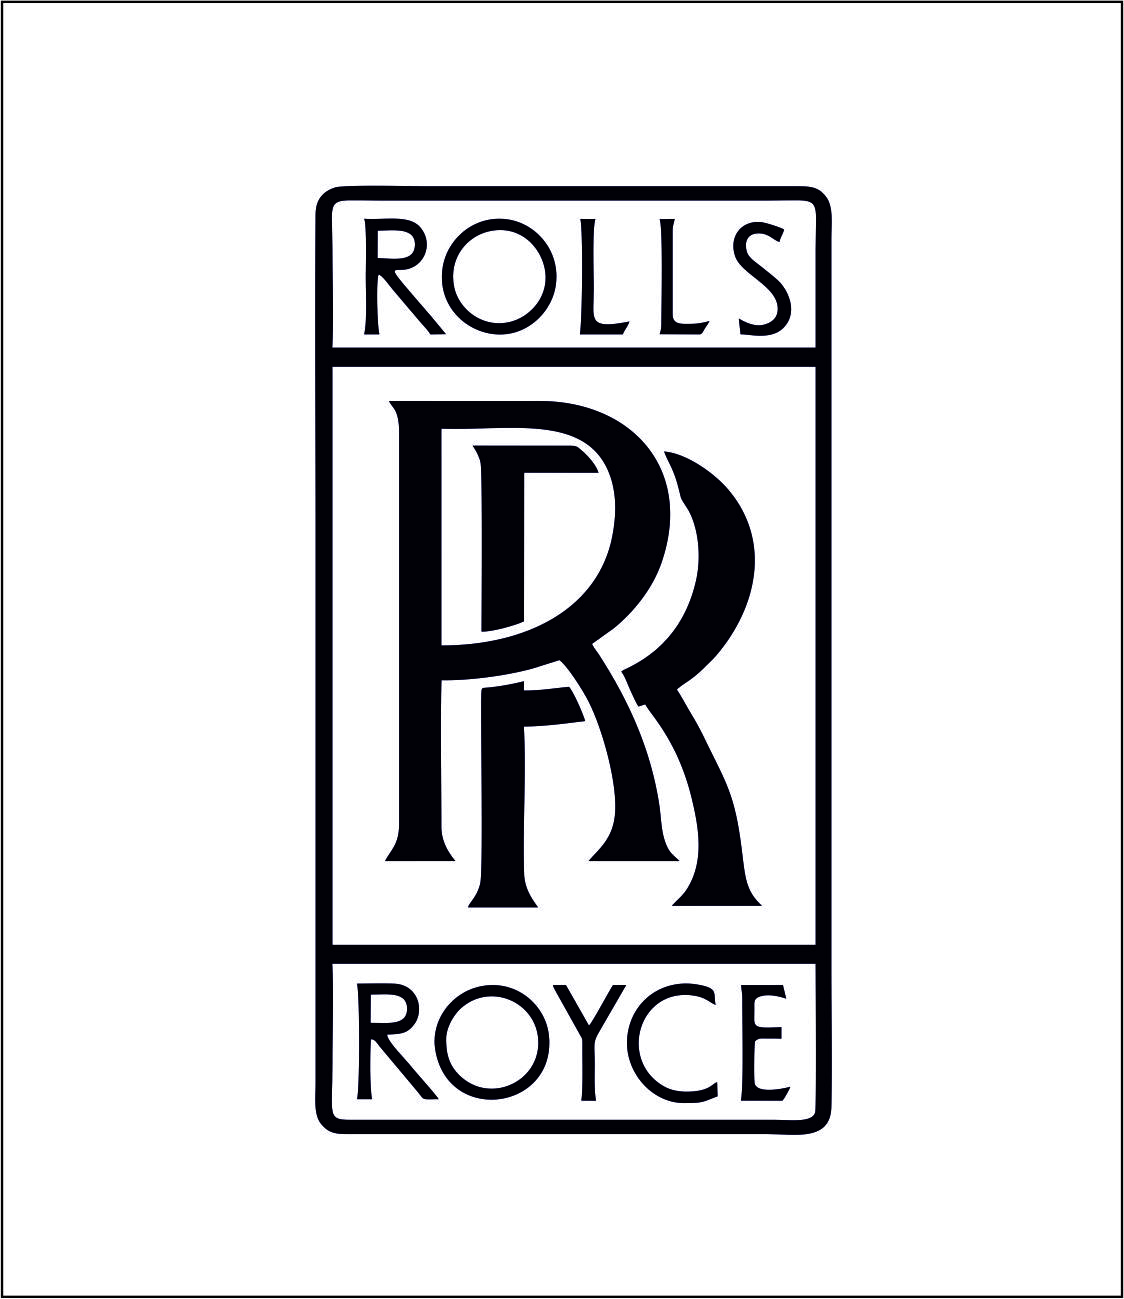 Rolls Royce | Rolls royce wallpaper, Rolls royce cars, Rolls royce